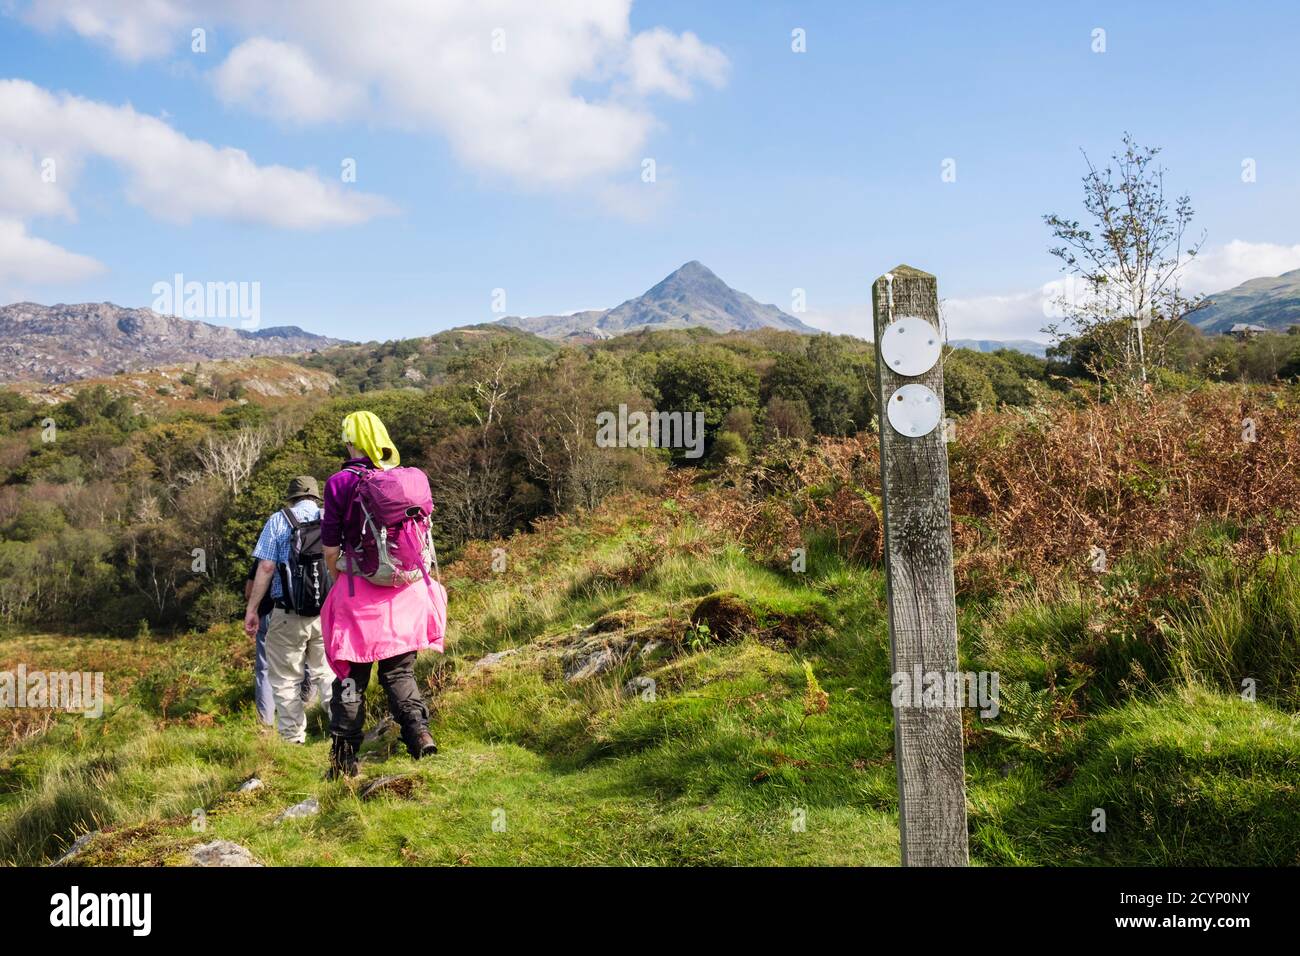 Les randonneurs marchent sur le sentier de randonnée dans les collines du parc national de Snowdonia avec le signe de chemin et le sommet de montagne de Cnicht à distance. Croesor, Gwynedd, pays de Galles, Royaume-Uni, Grande-Bretagne Banque D'Images